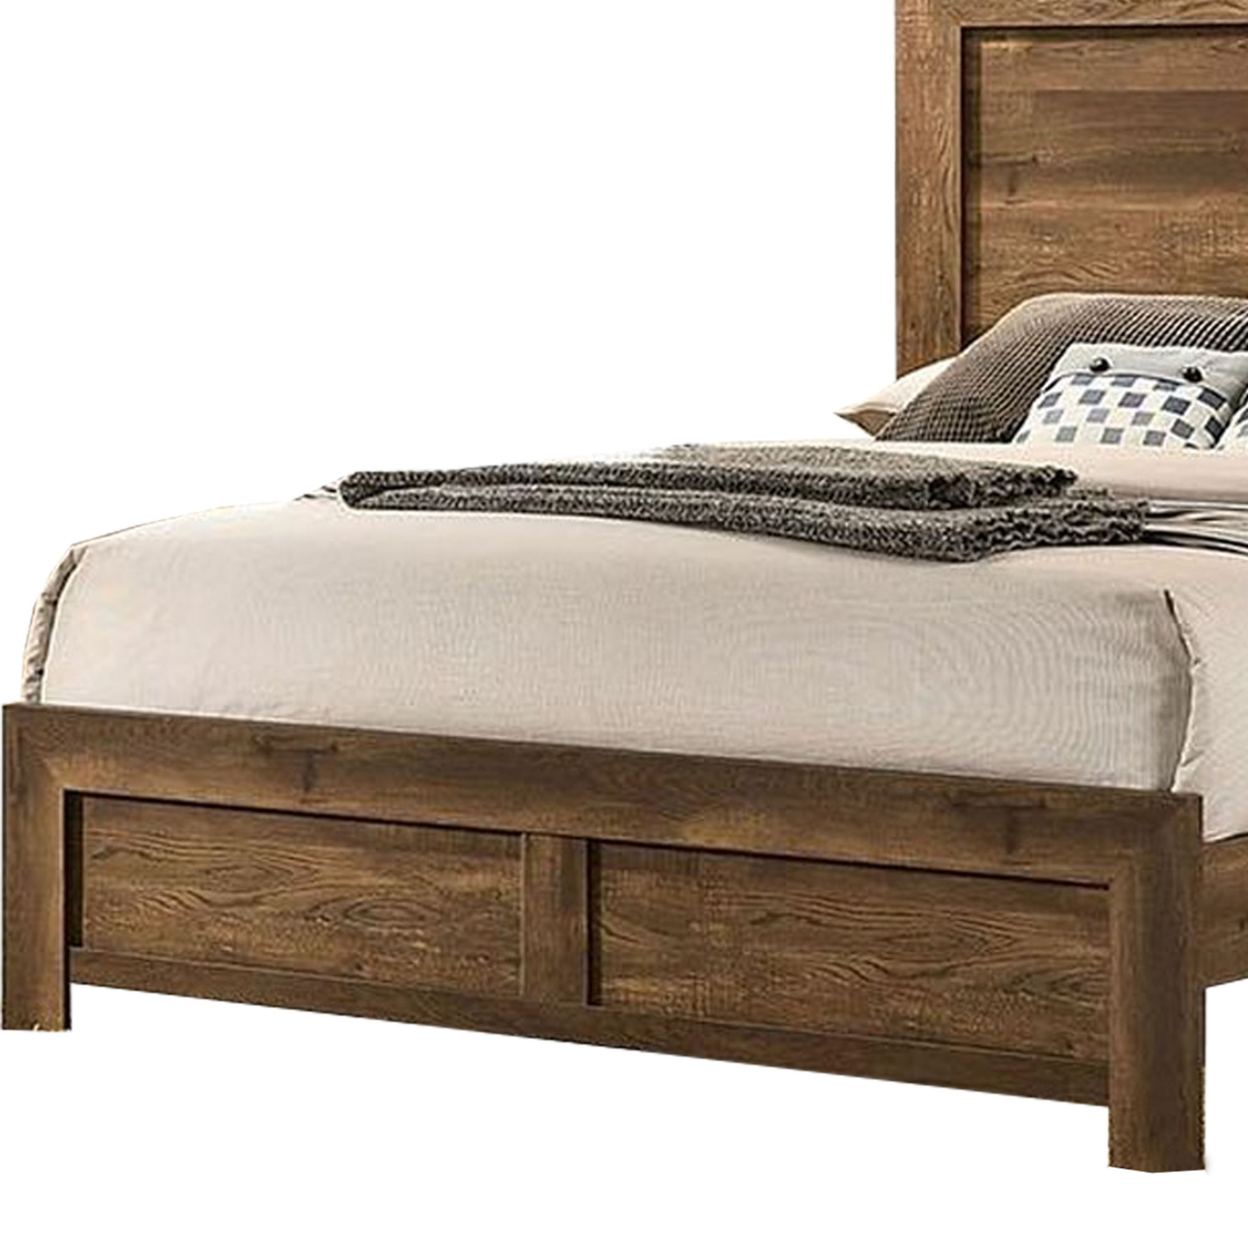 Rustic Style Wooden Queen Bed With Grain Details, Brown- Saltoro Sherpi